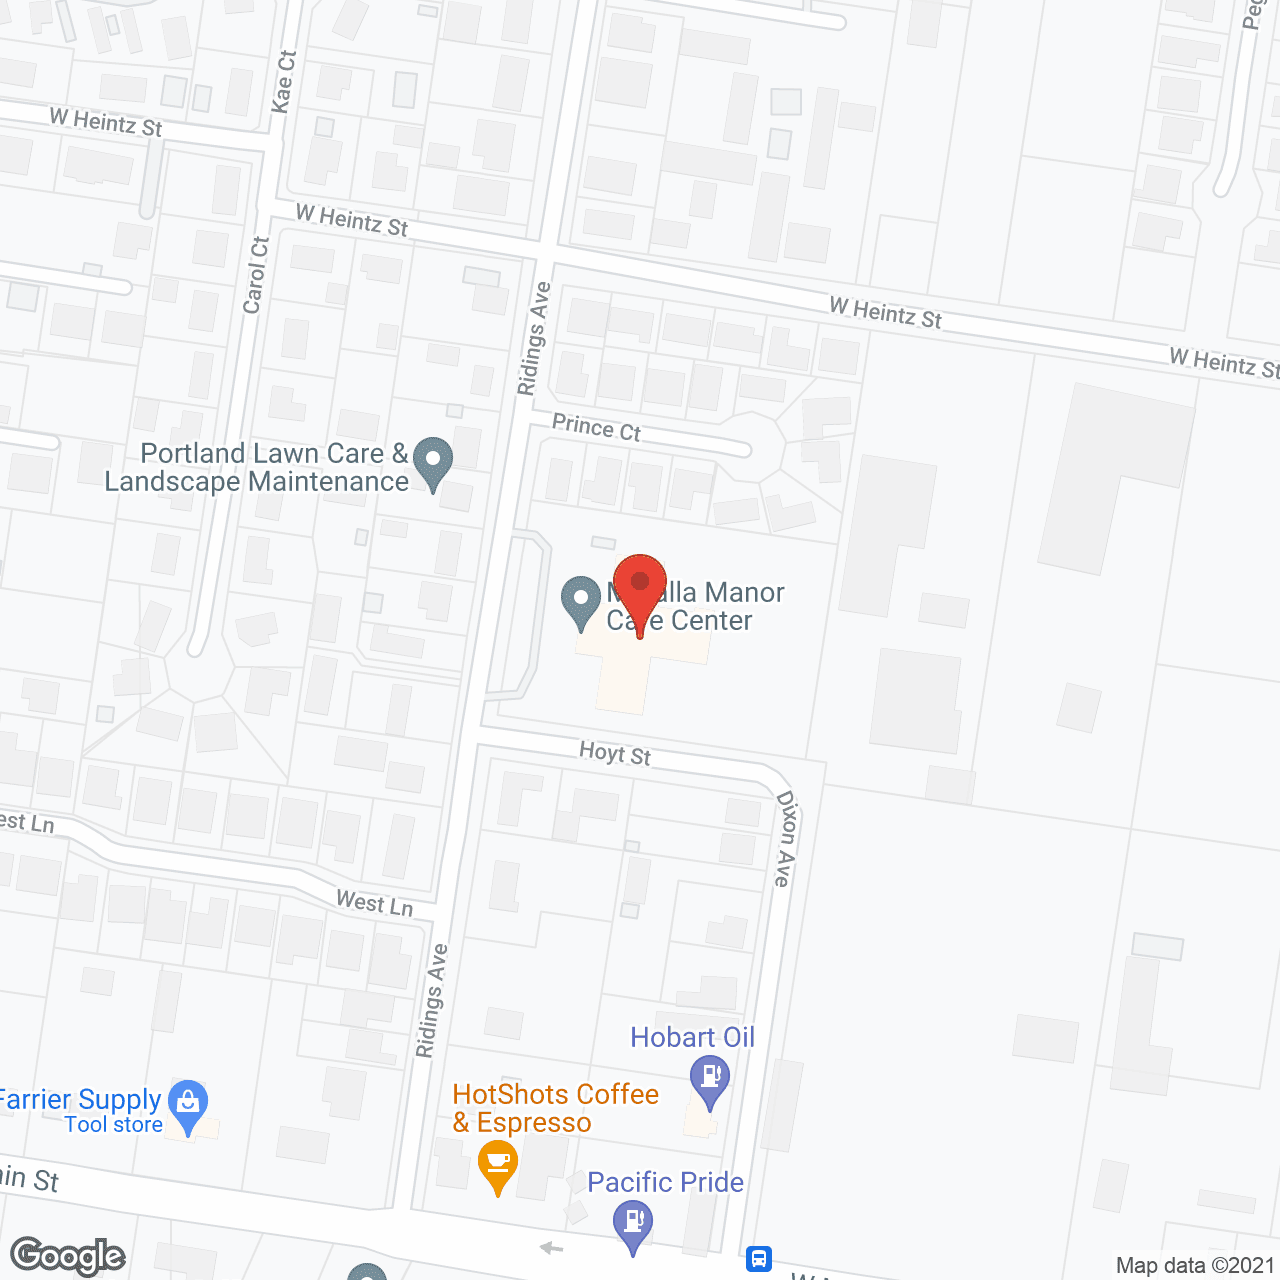 Molalla Manor Care Center in google map